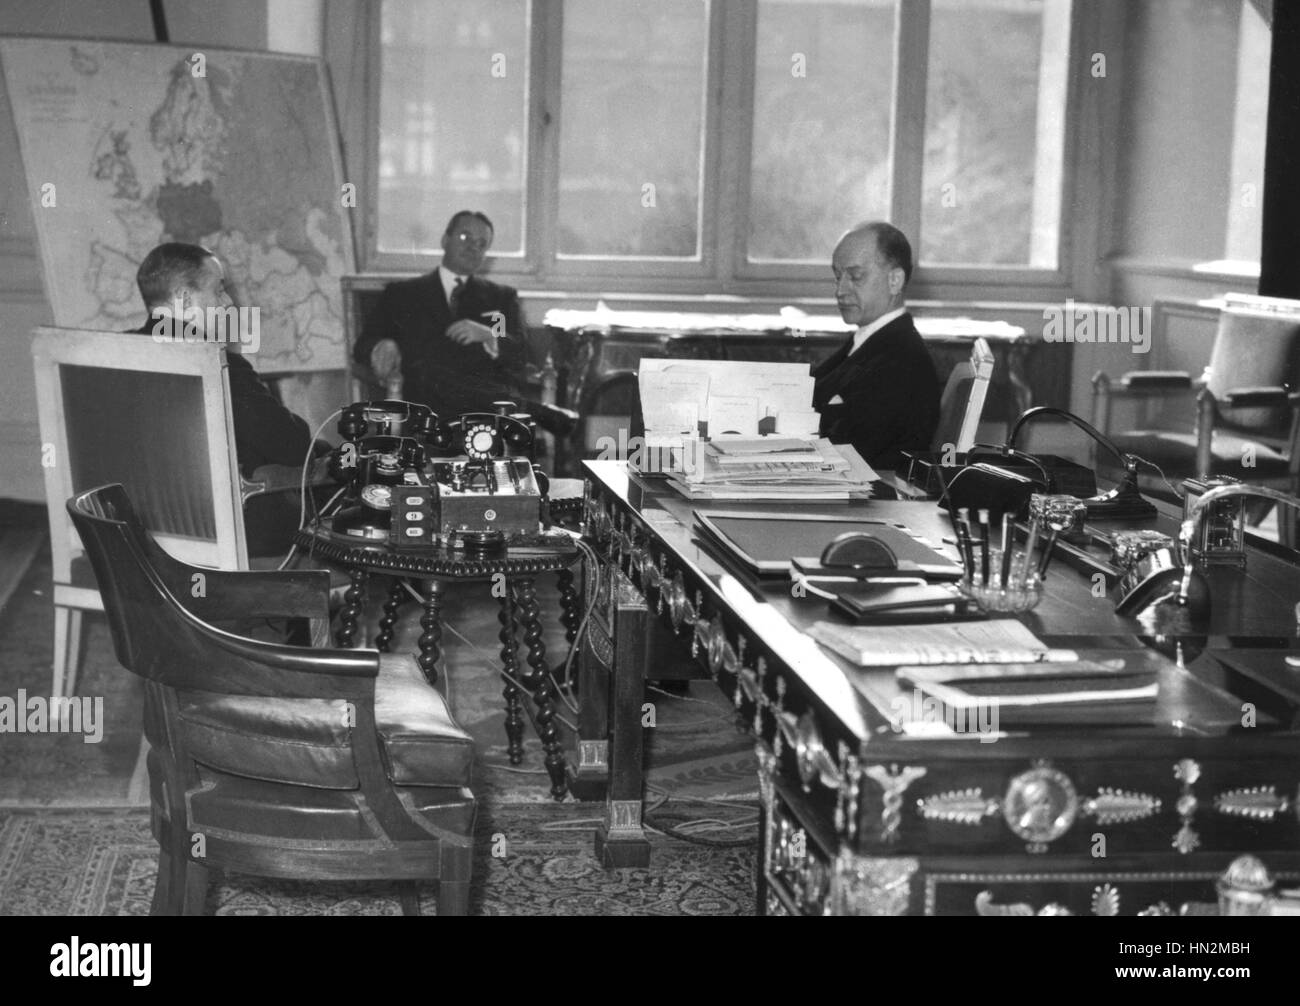 Paris. Sumner Welles, sitzt neben der Landkarte Europas, diskutieren mit Paul Reynaud über das künftige Schicksal Deutschlands März 1940 Frankreich - Zweiter Weltkrieg Stockfoto